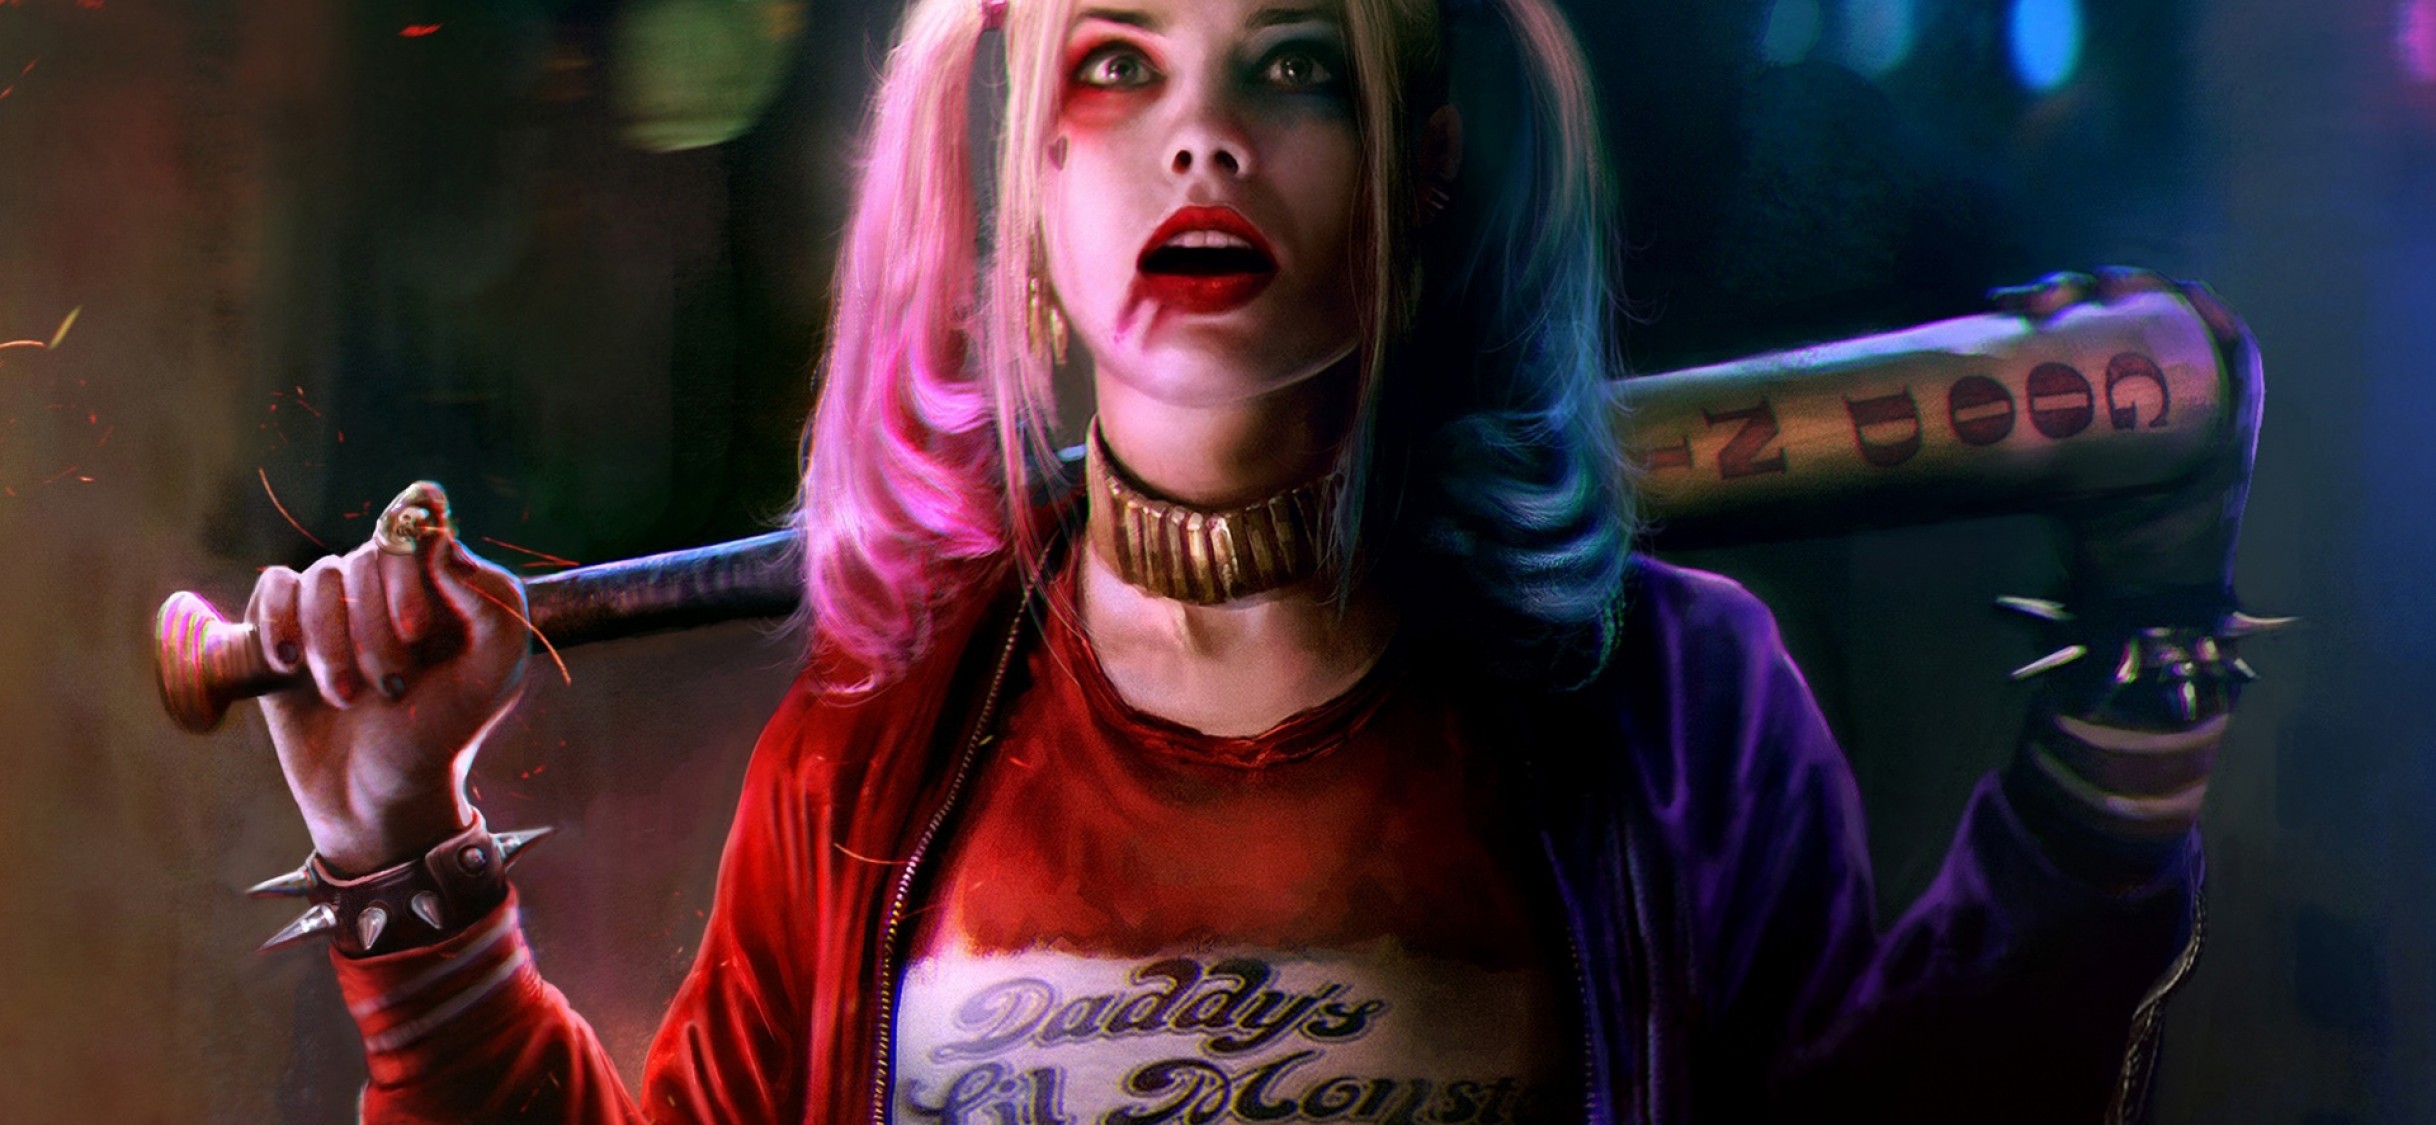 Margot Robbie Harley Quinn & Joker Wallpaper for Desktop and Mobiles